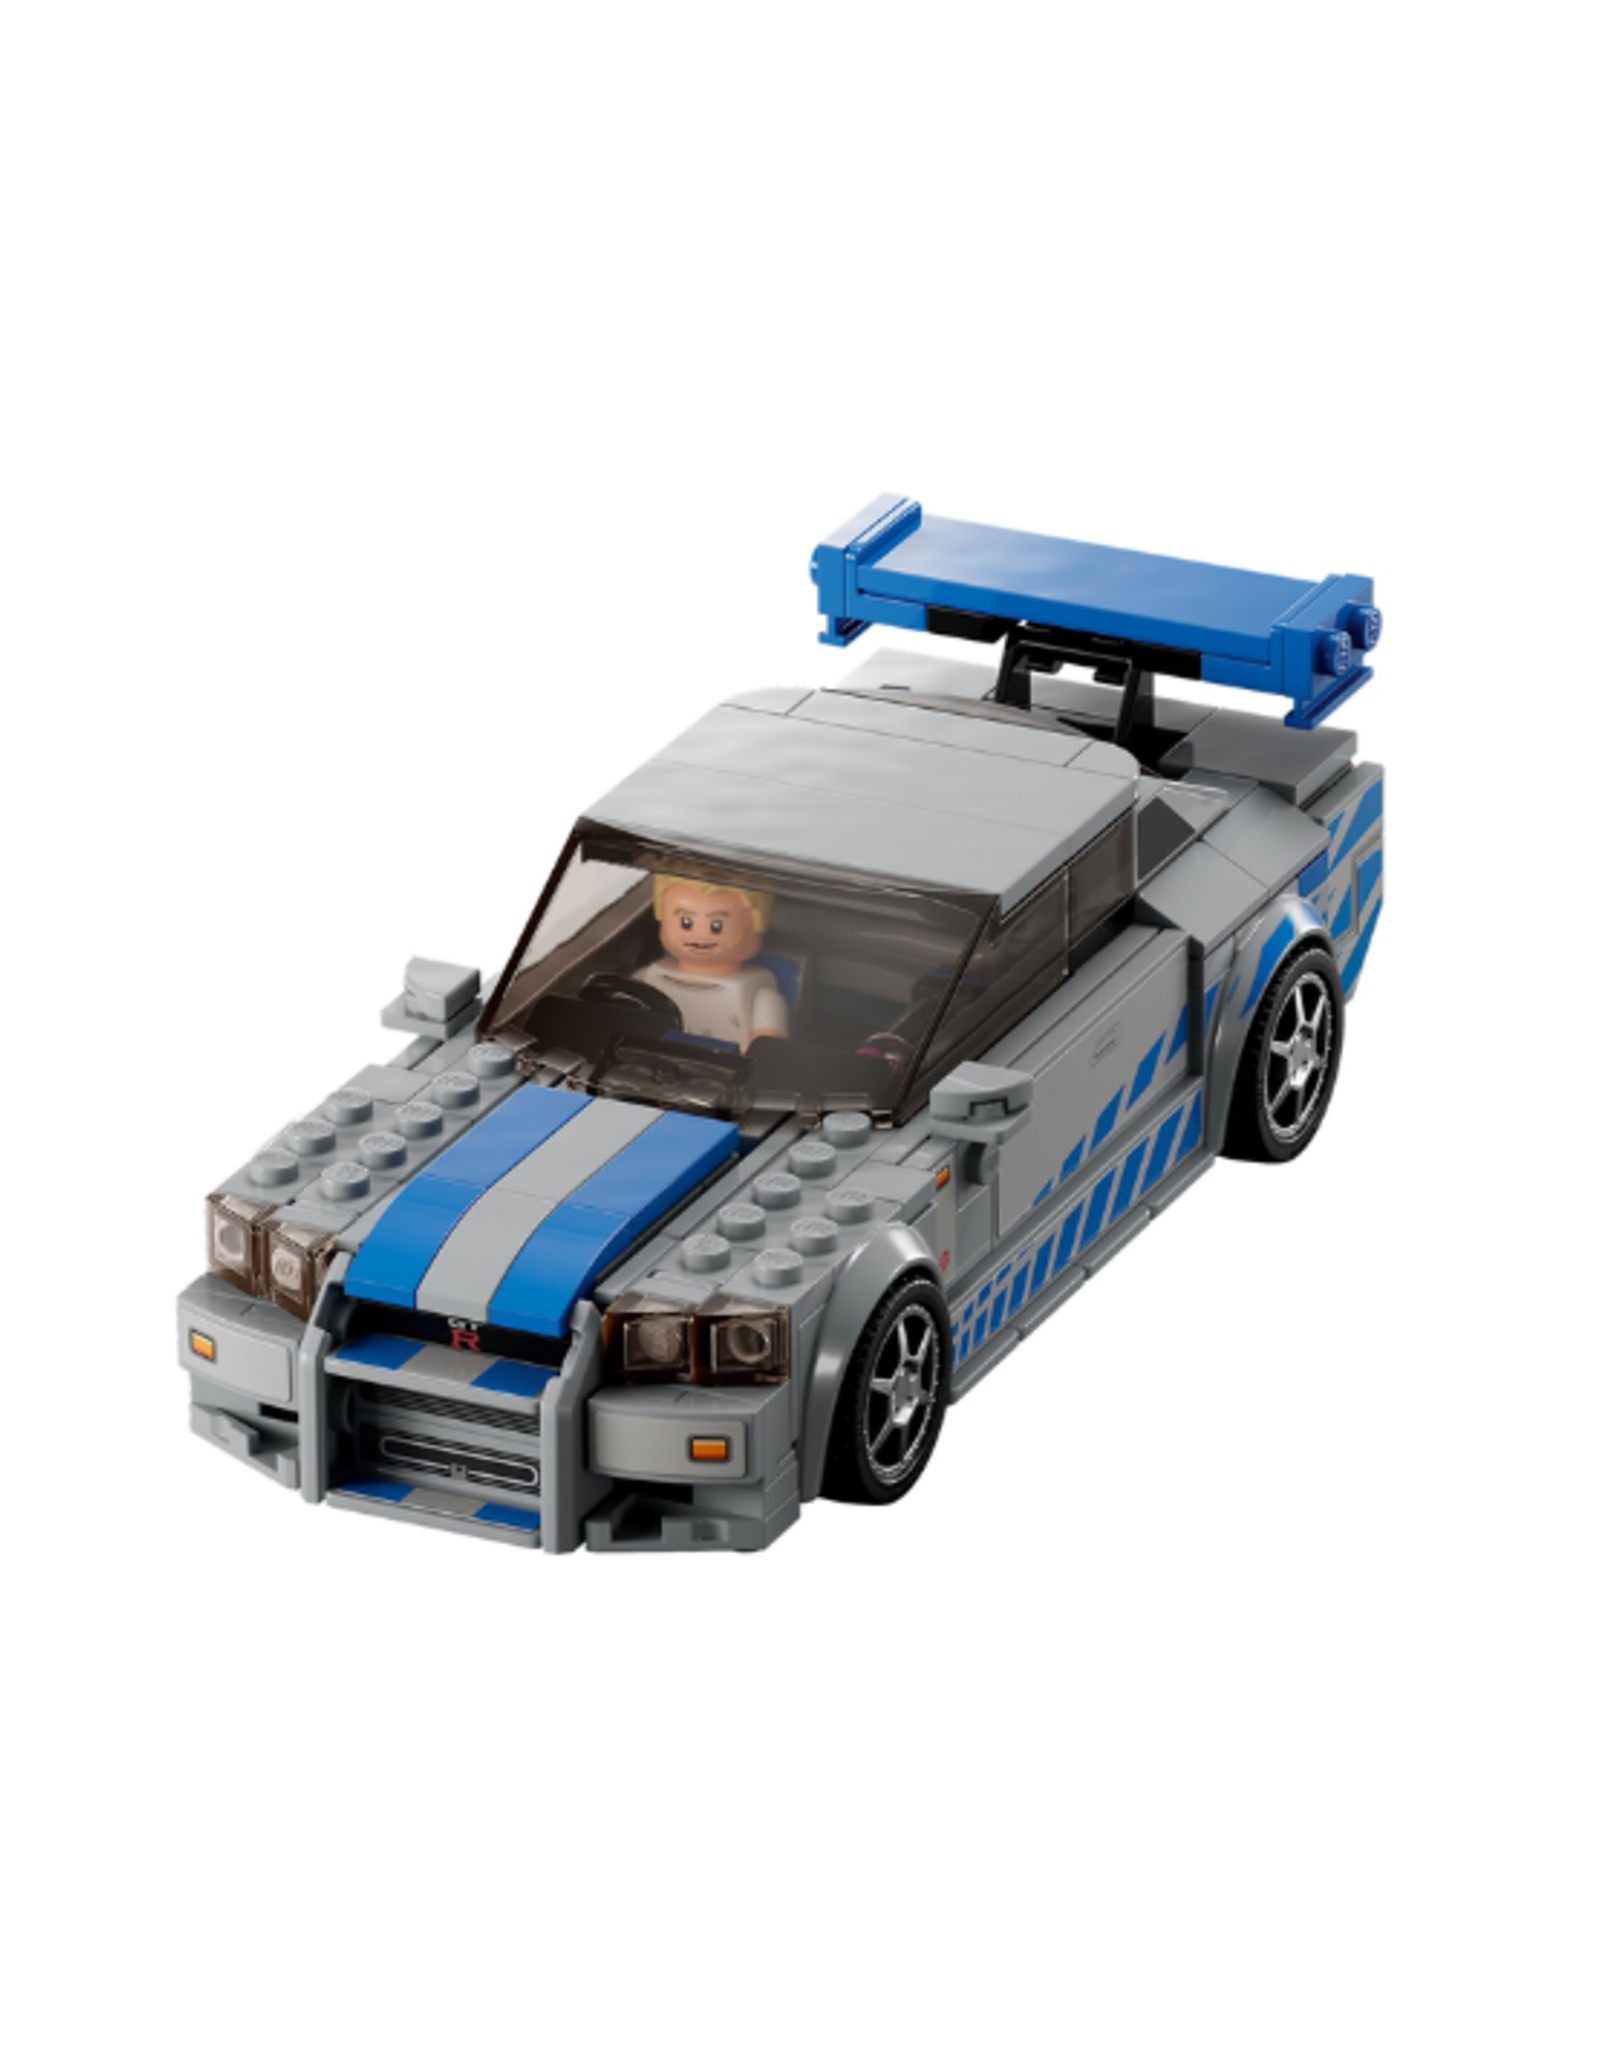 Lego Lego - Speed Champions - 76917 - 2 Fast 2 Furious Nissan Skyline GT-R (R34)